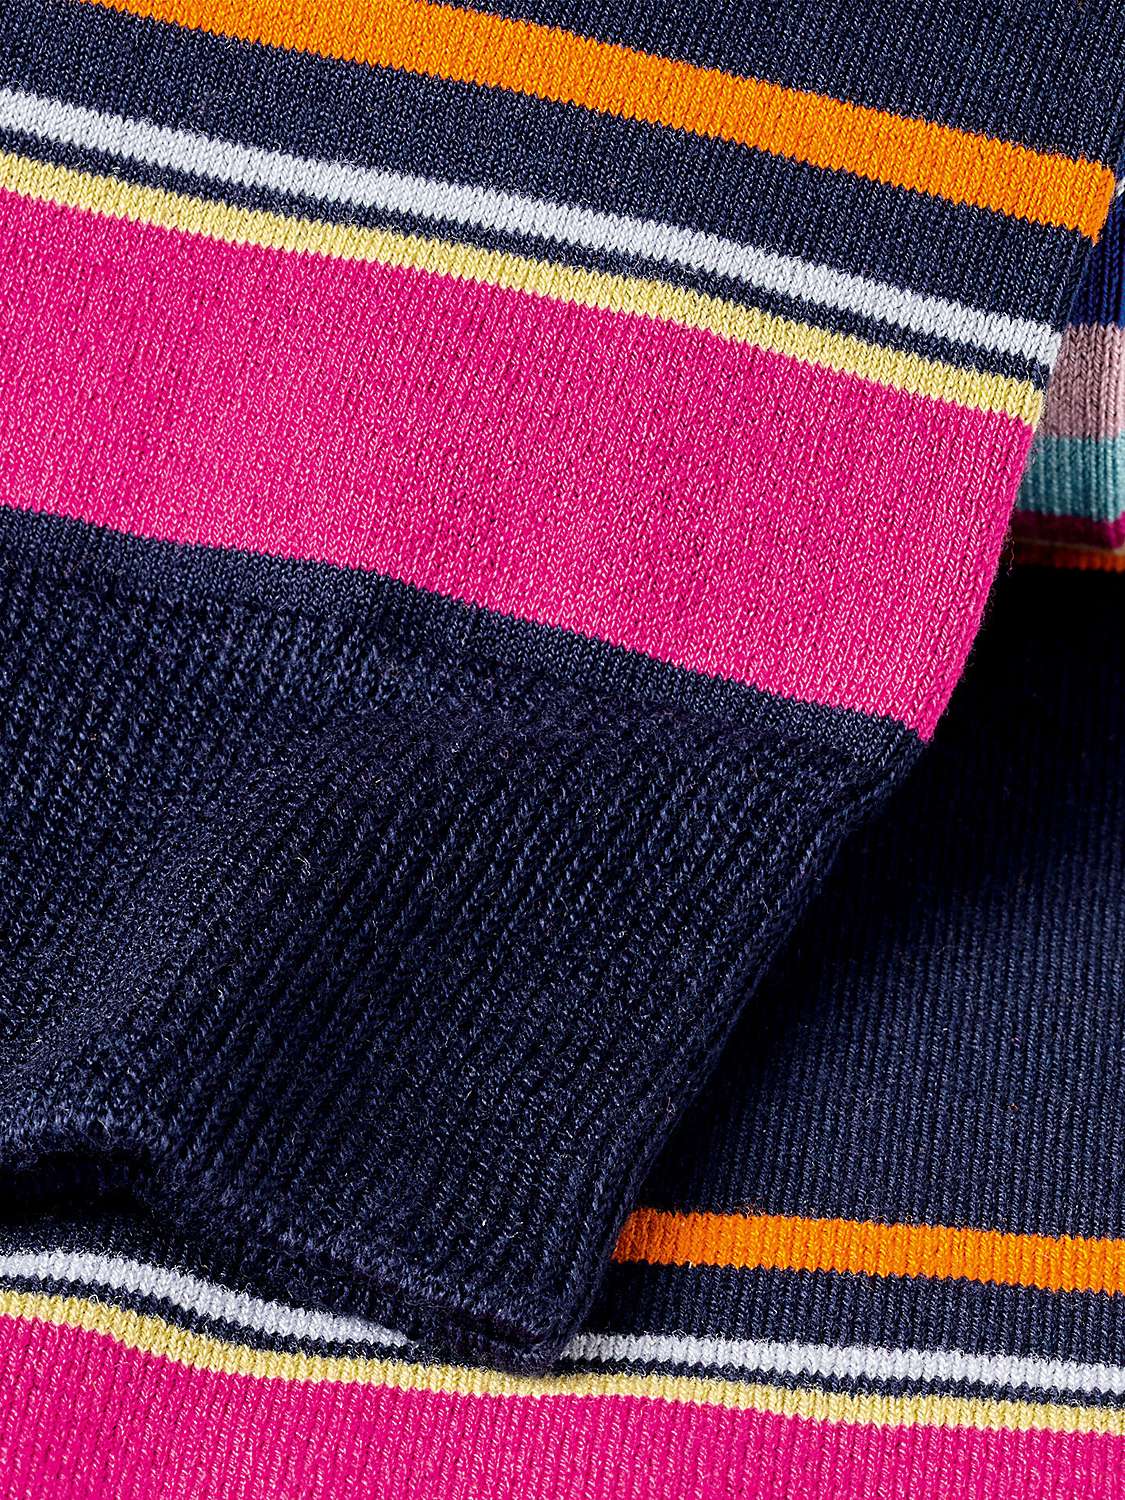 Charles Tyrwhitt Multi Block Stripe Socks, Navy/Multi at John Lewis ...